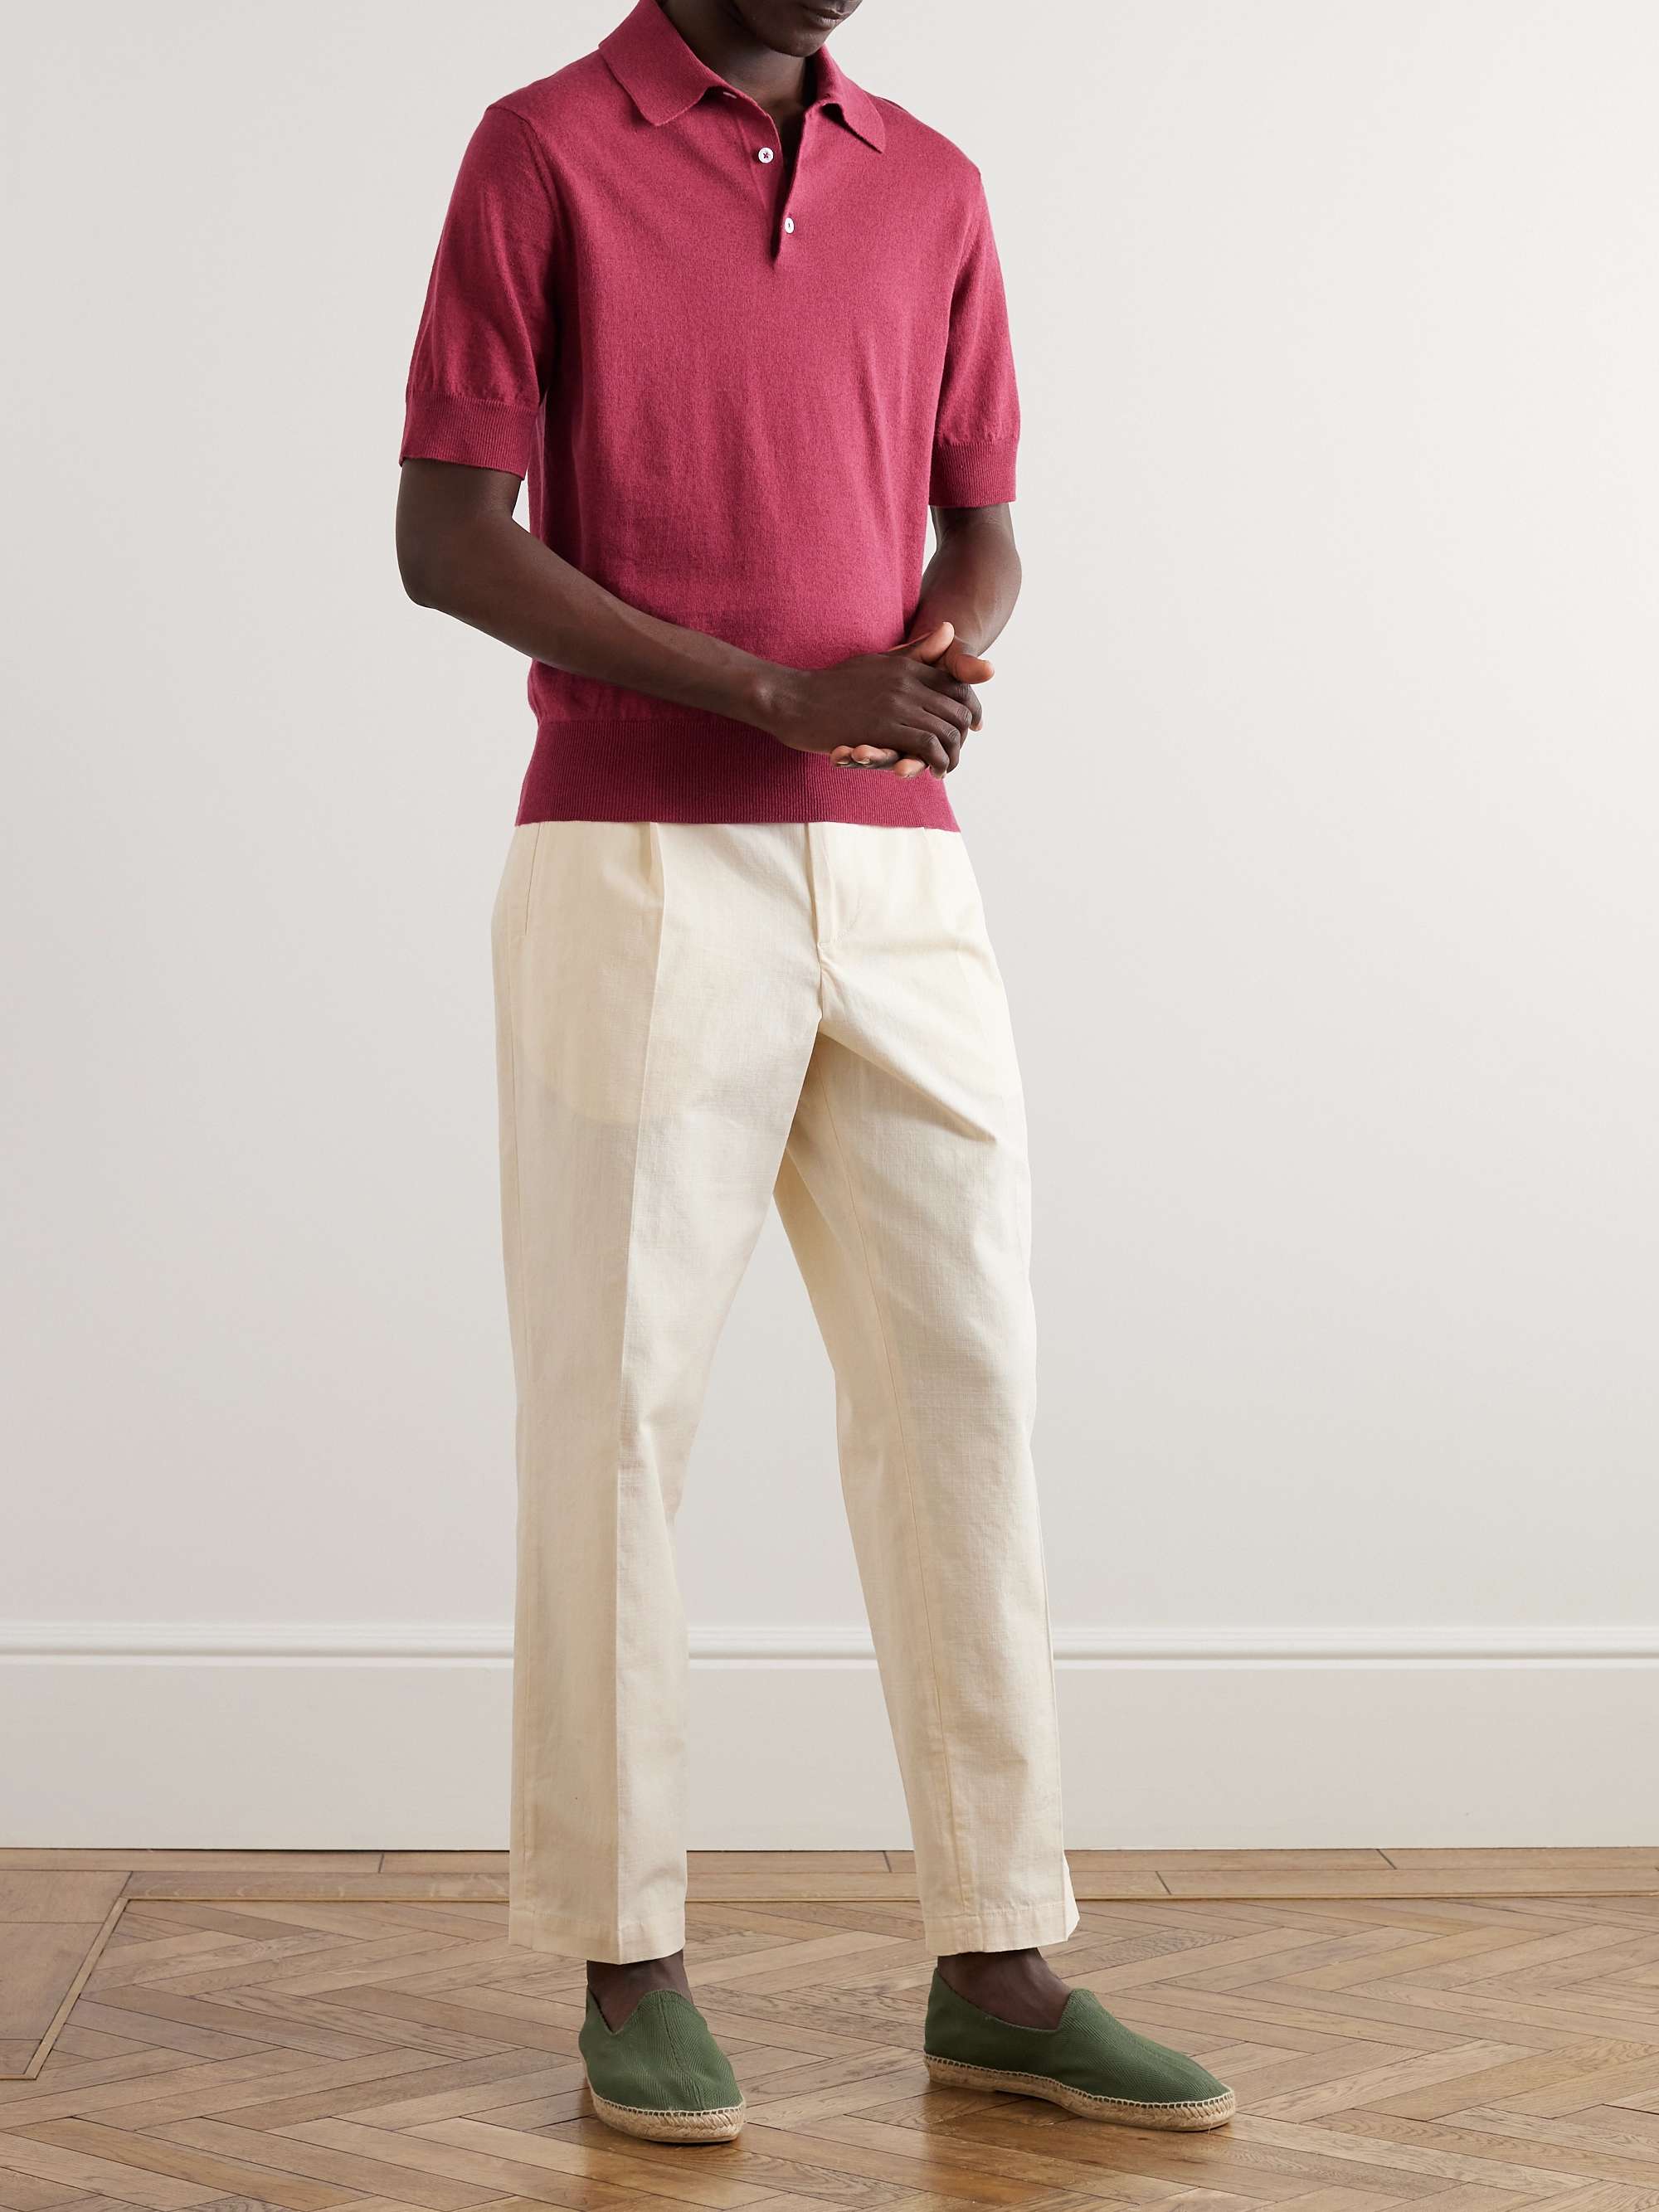 Gucci - Men - logo-embroidered Cotton-piqué Polo Shirt Red - S